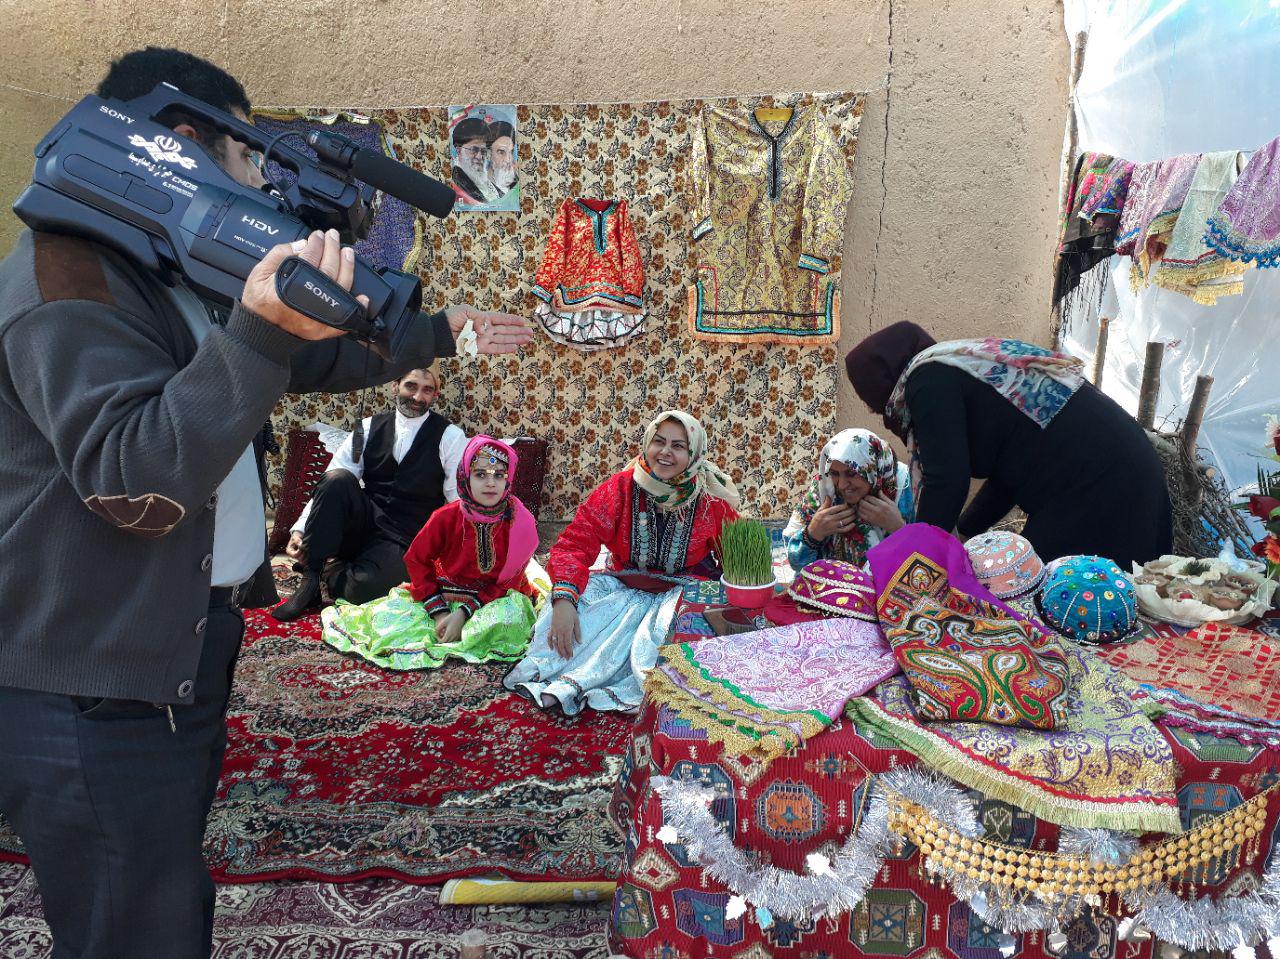 برگزاری آئین ها و مراسمات اقوام رنگارنگ گلستان در نوروزگاه و دهکده گردشگری  روستای دارکلاته